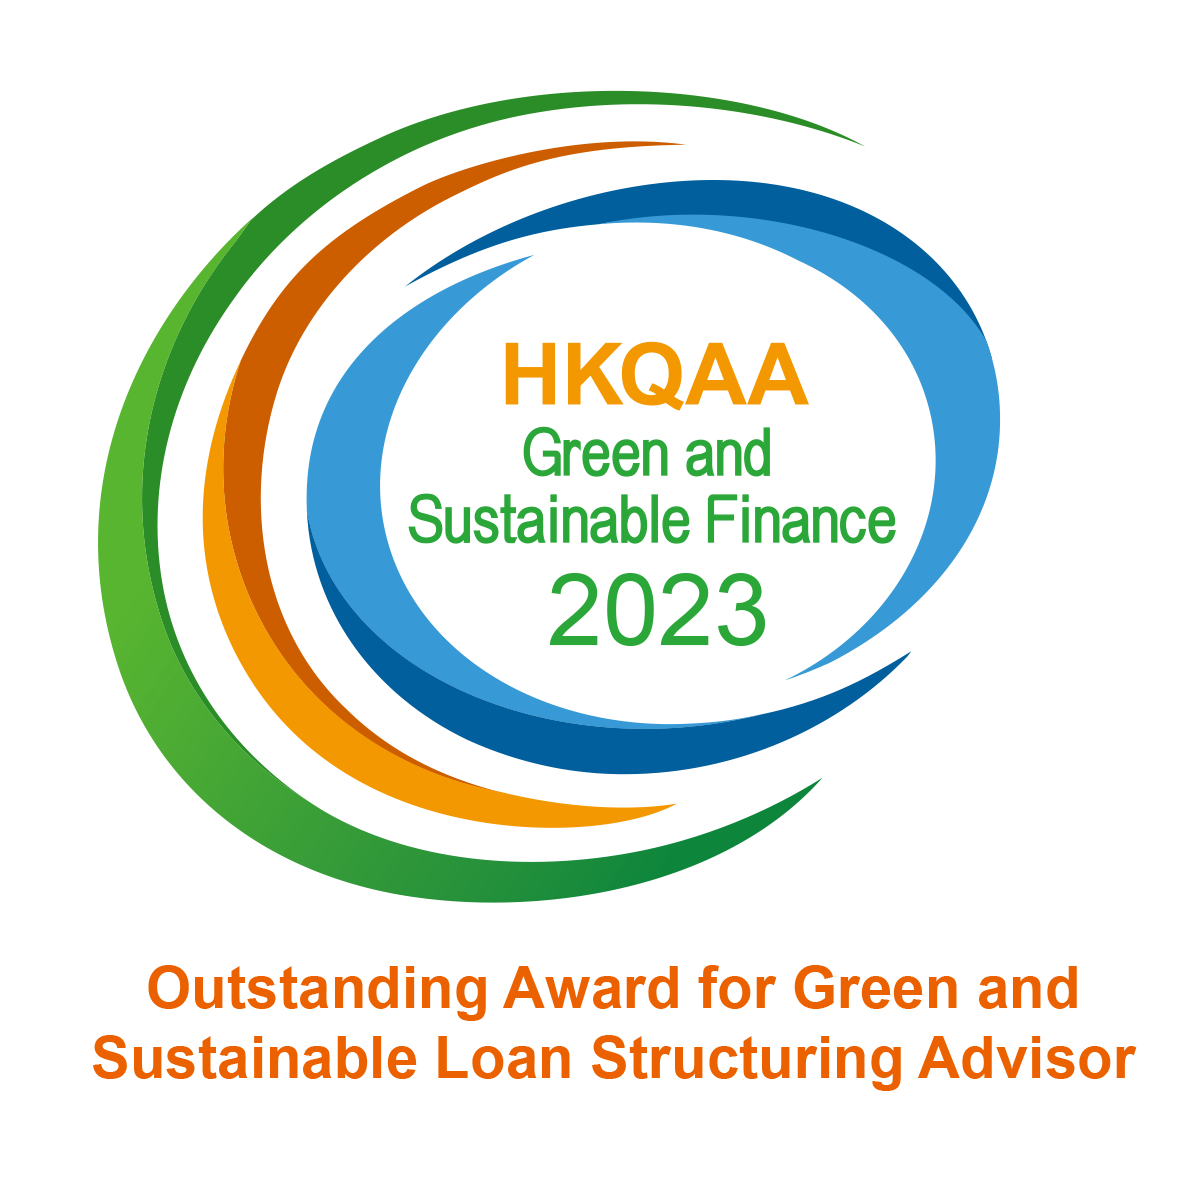 HKQAA Hong Kong Green and Sustainable Finance Awards 2023